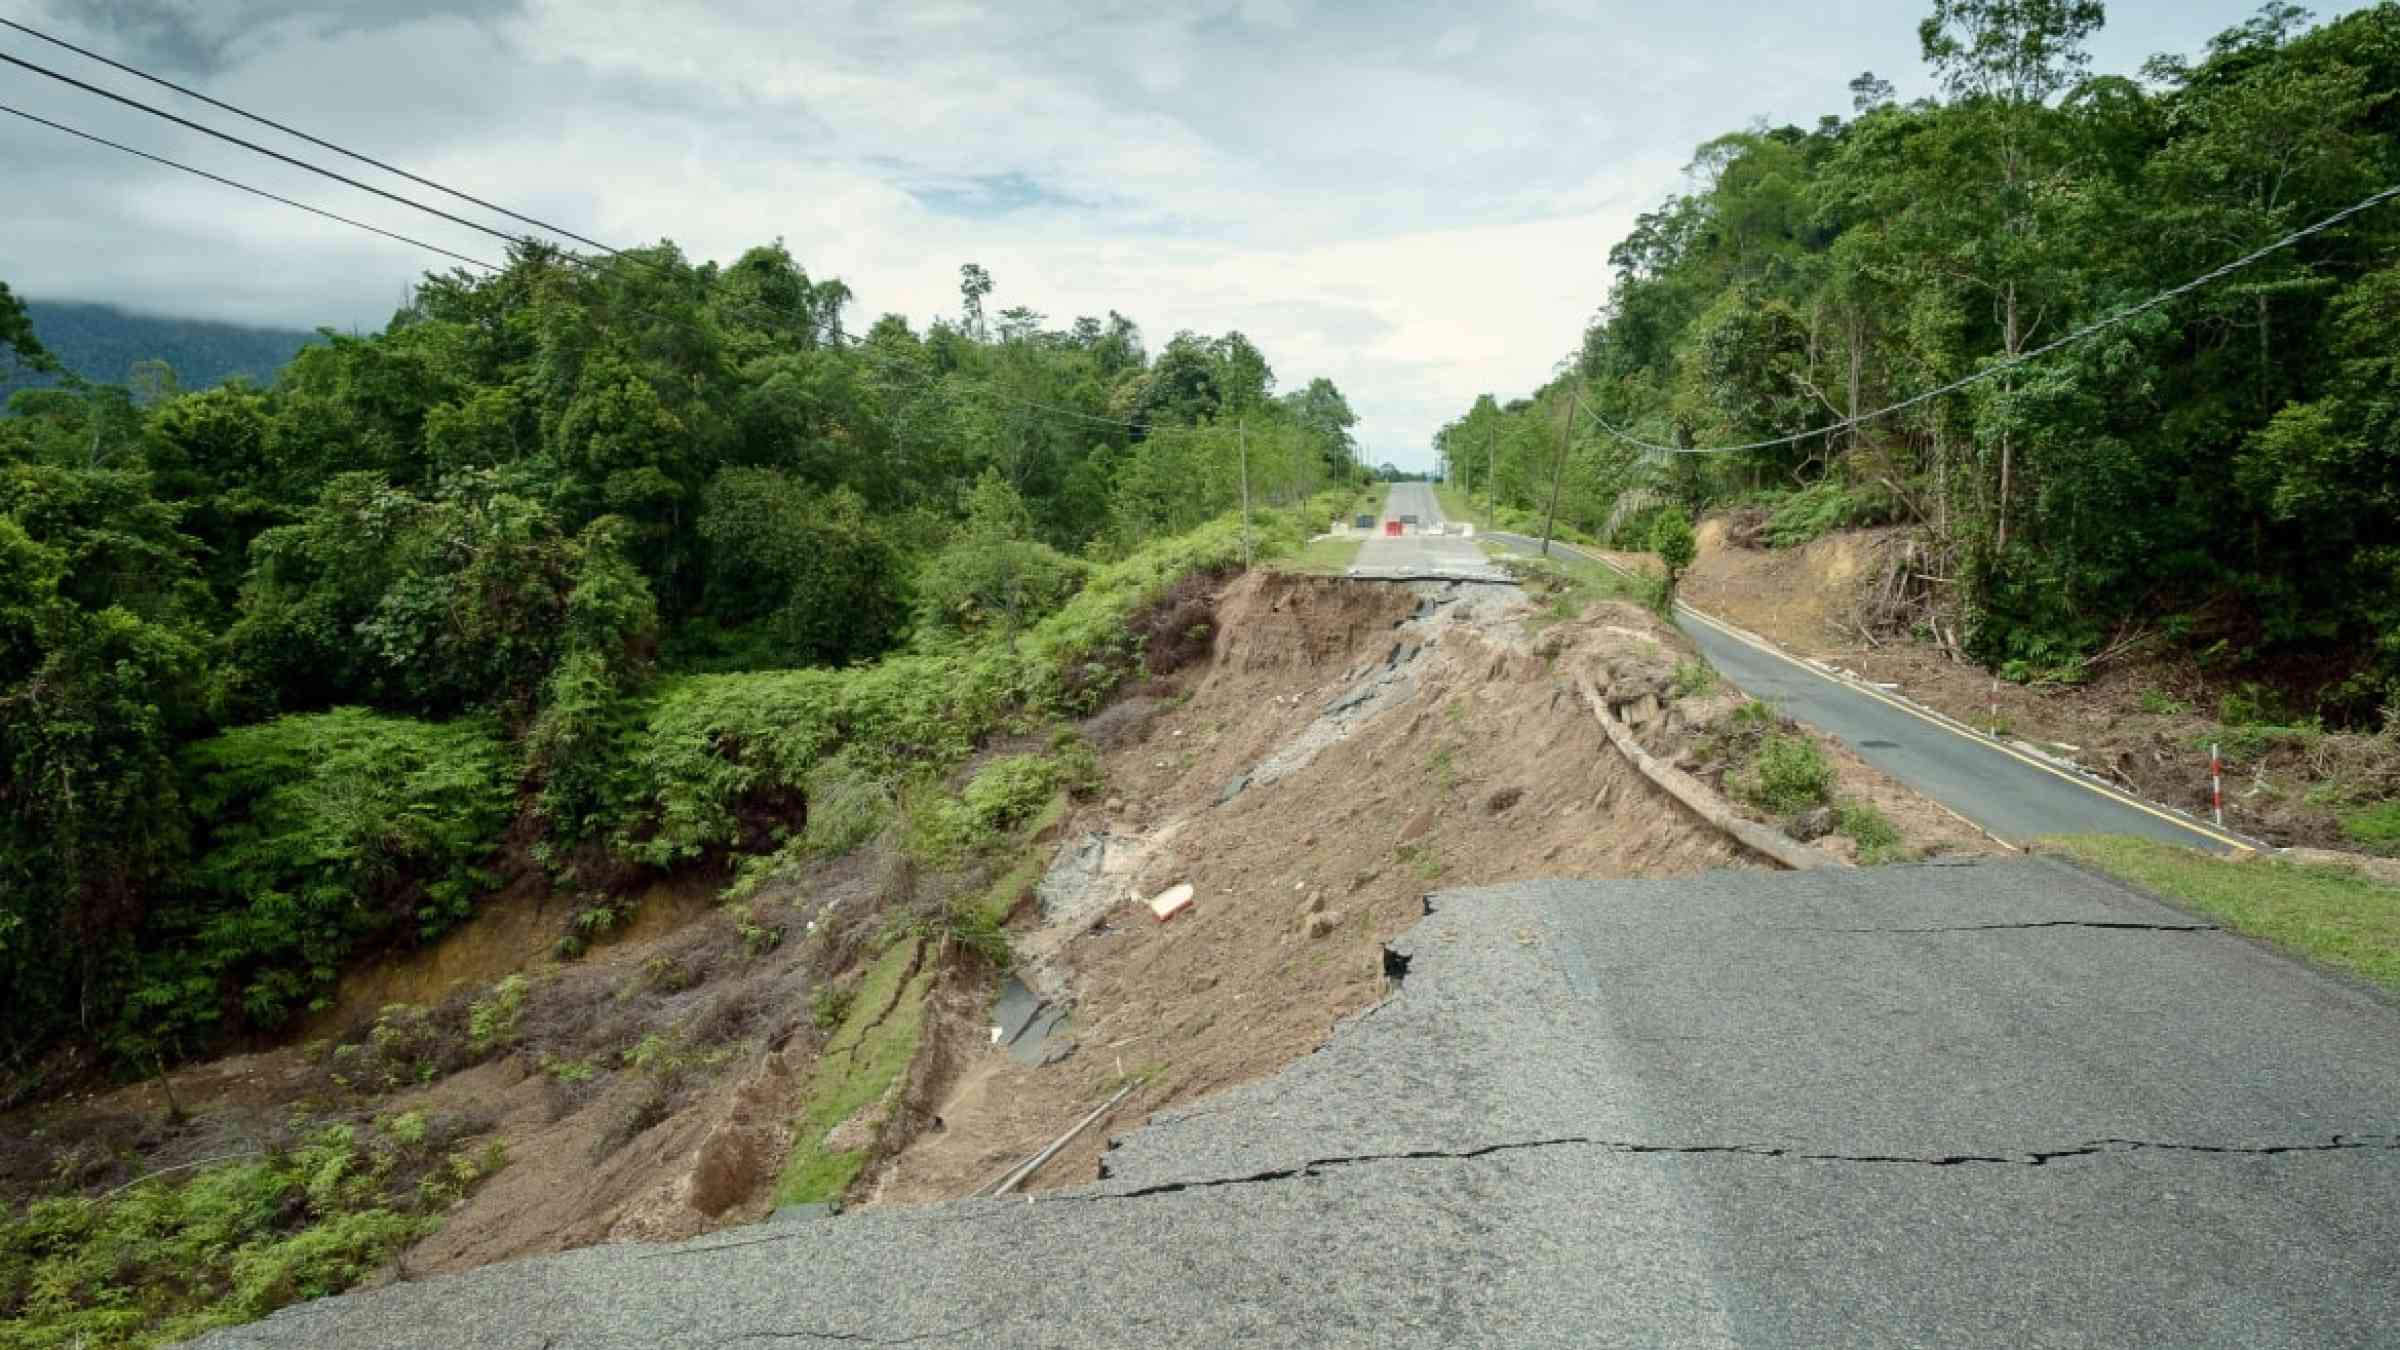 Landslide-affected road